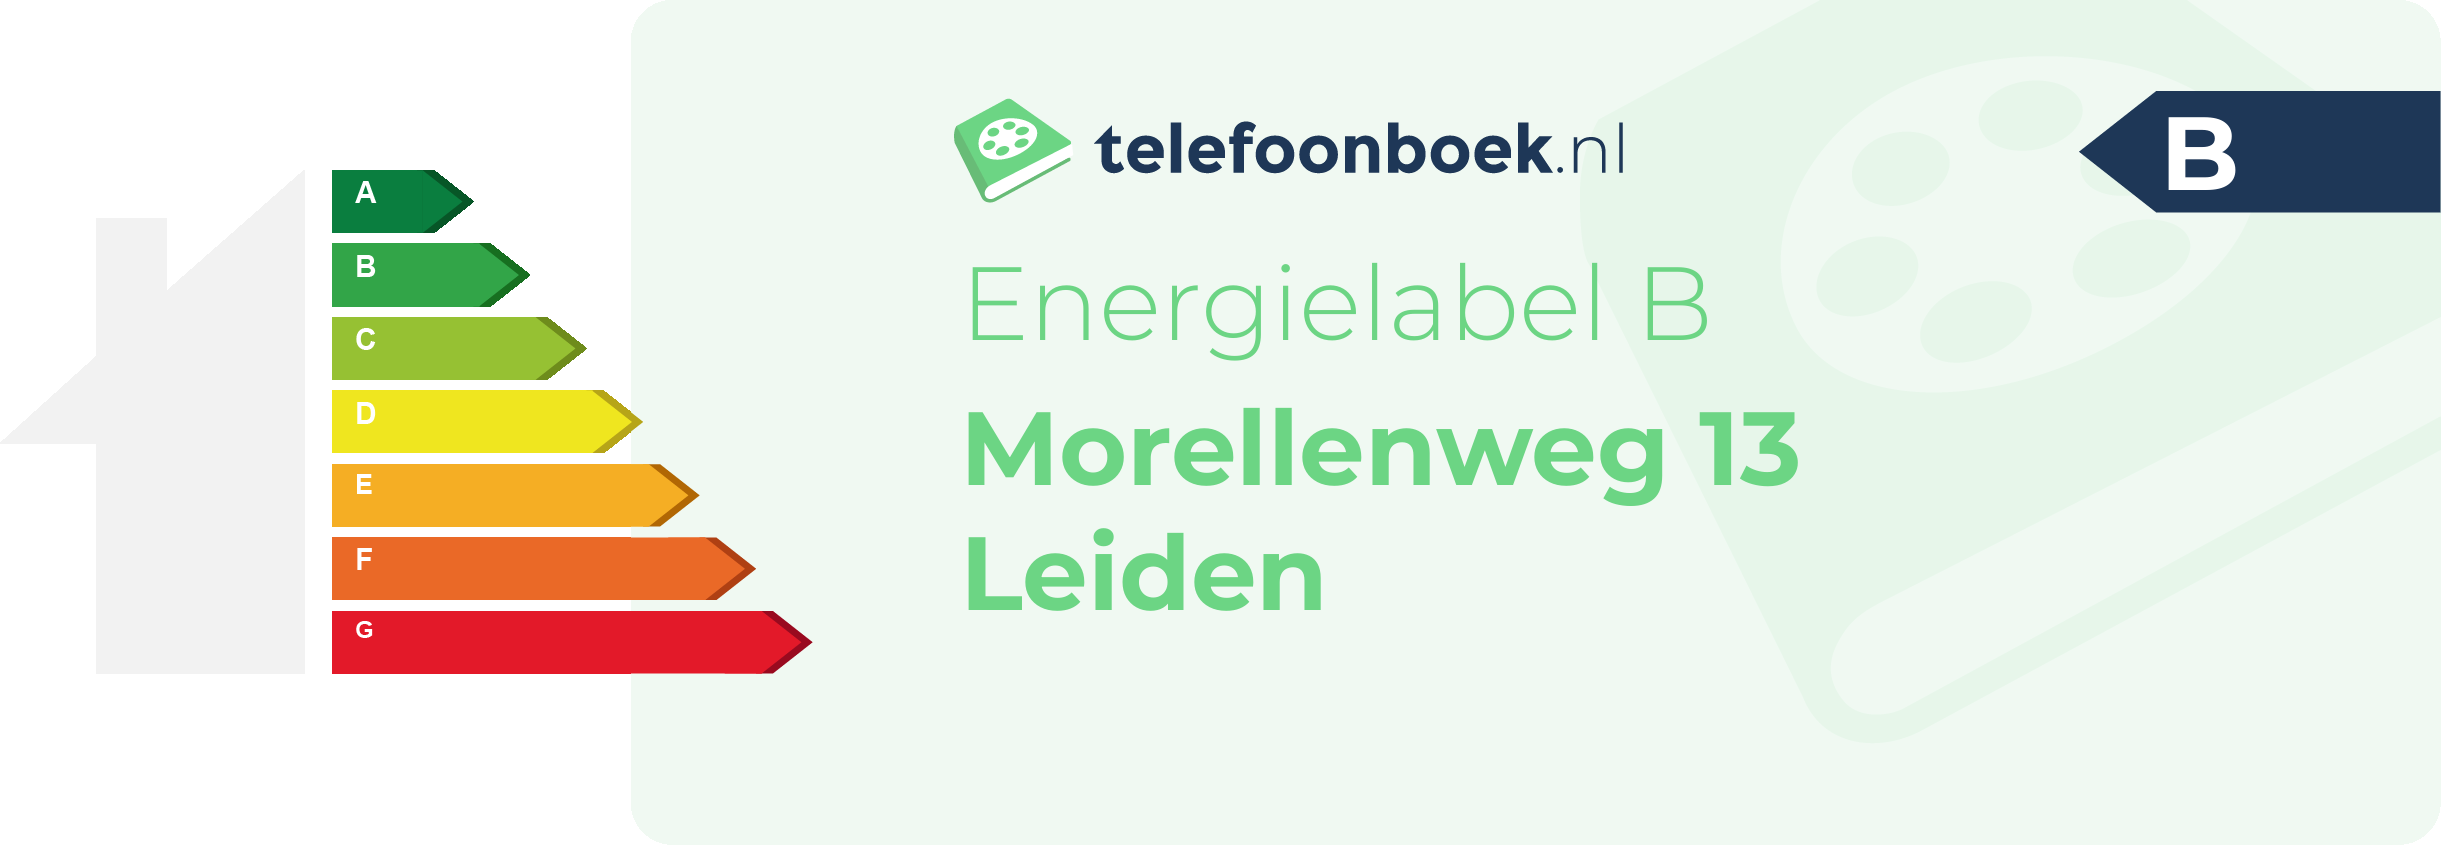 Energielabel Morellenweg 13 Leiden